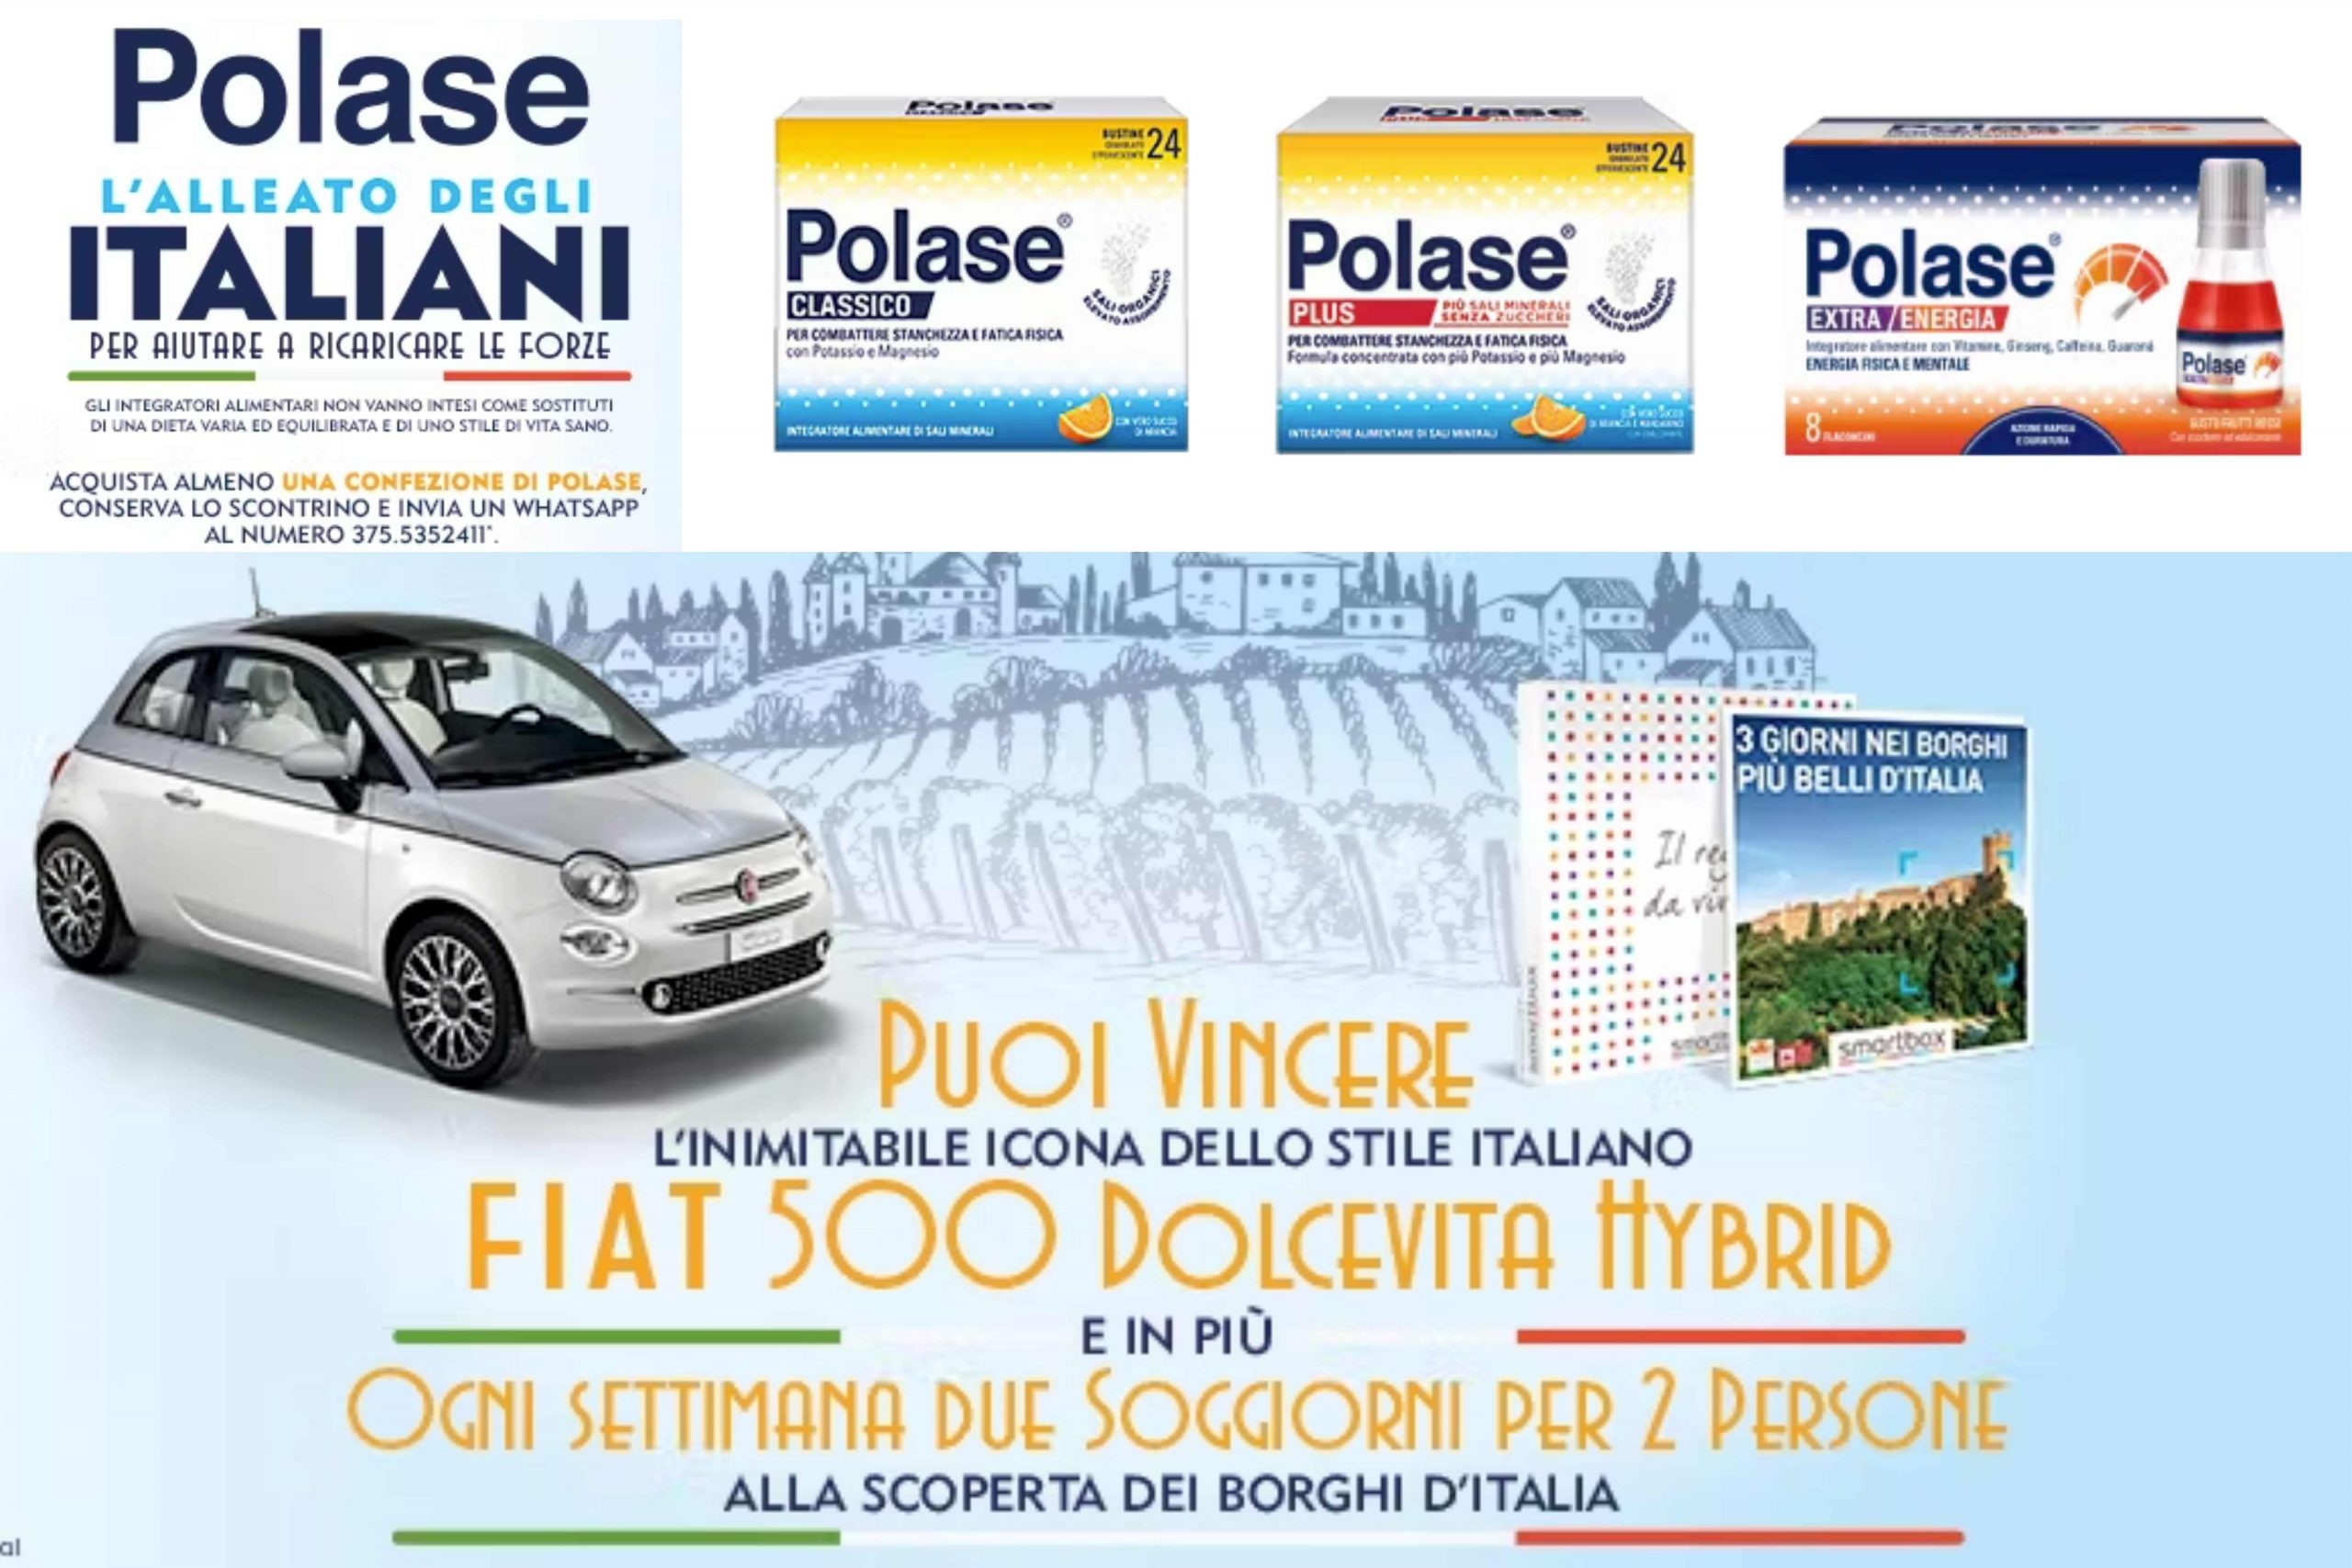 Concorso Polase “L’alleato degli italiani”: come vincere lo Smartbox “3 giorni nei borghi più belli d’Italia” o una Fiat 500 Hybrid Dolcevita